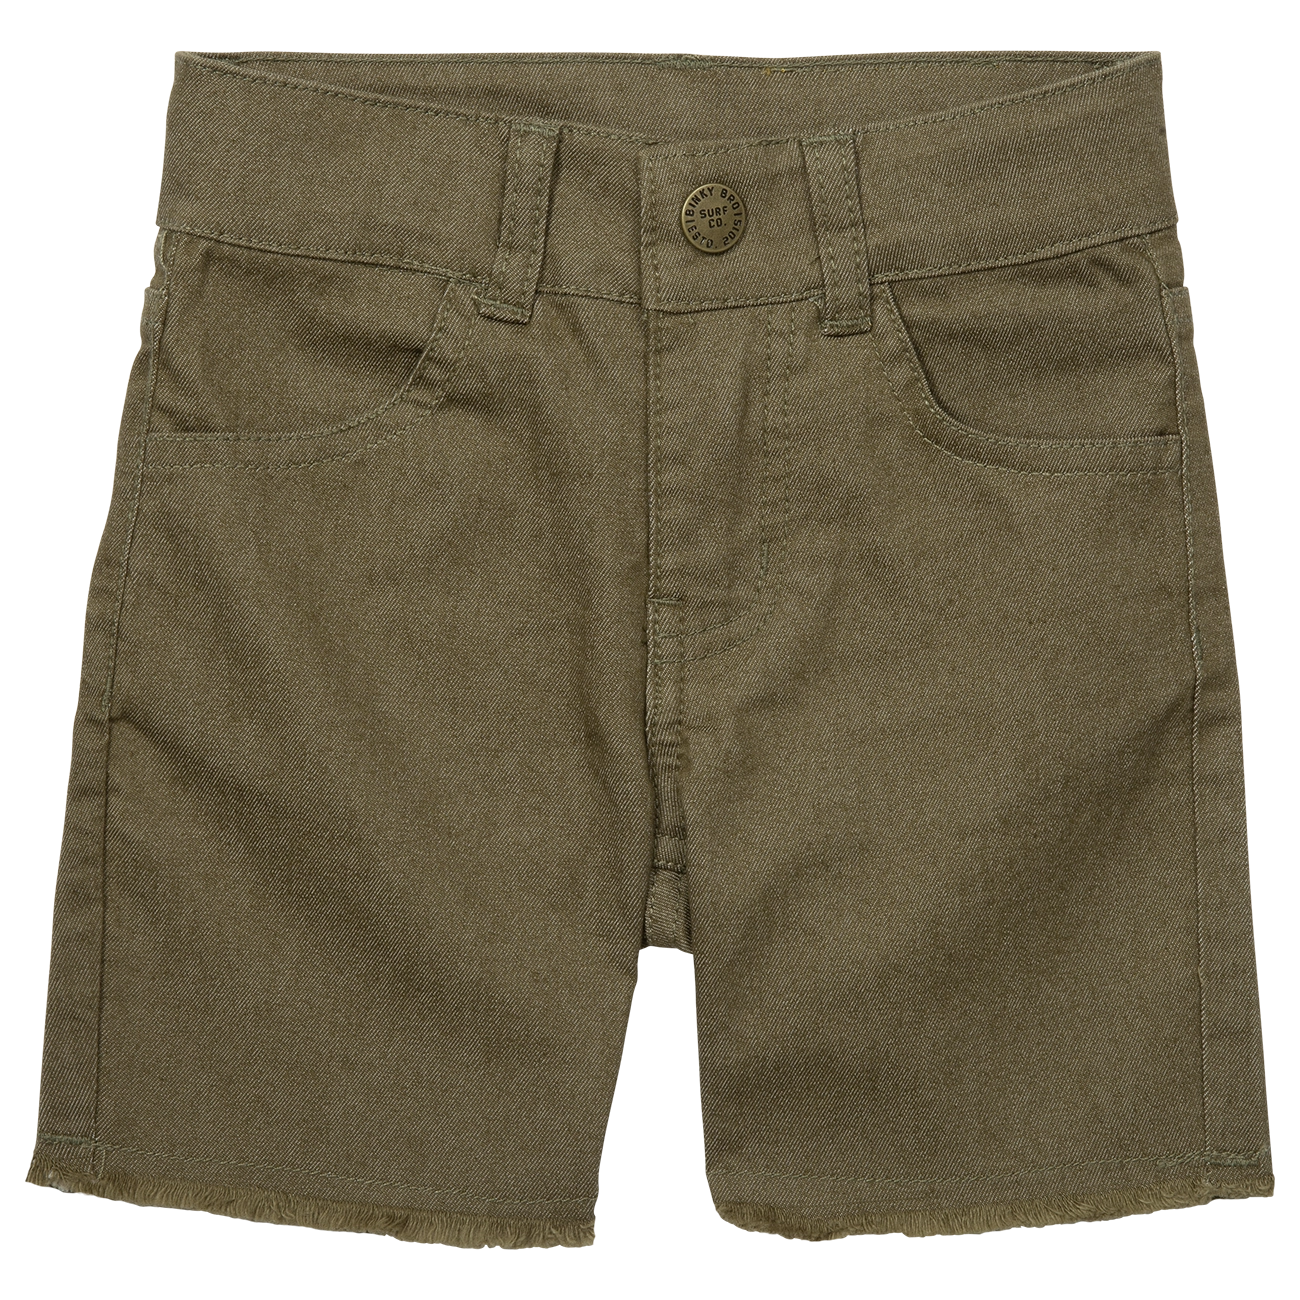 Waco Shorts - Army